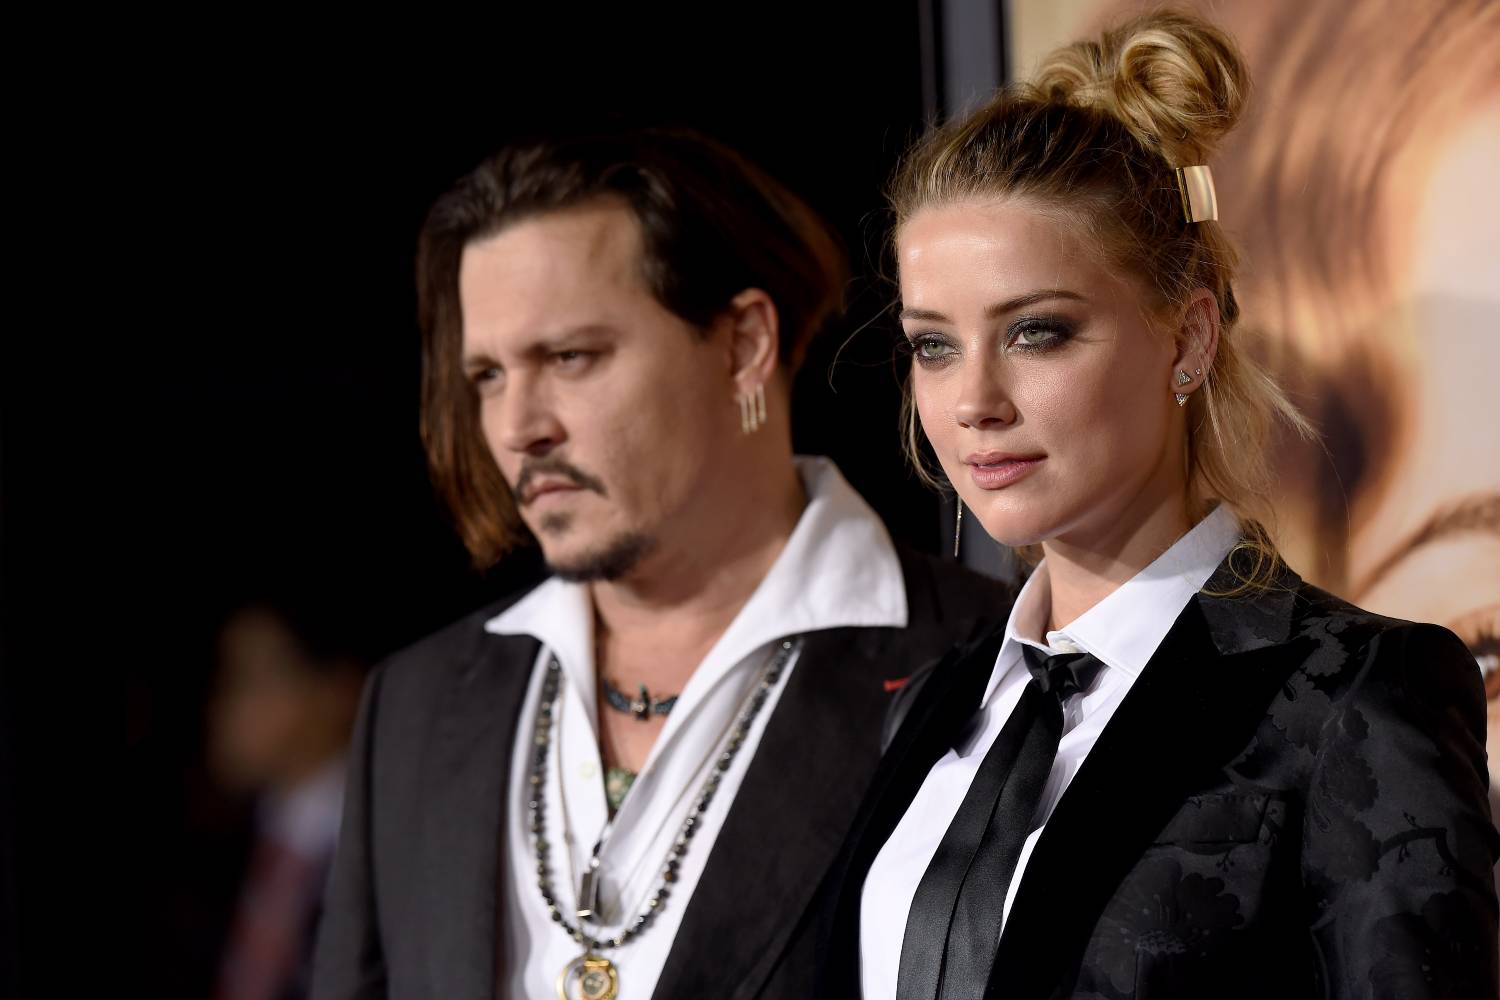 O narcisismo no centro do júri de Johnny Depp e Amber Heard - Forbes